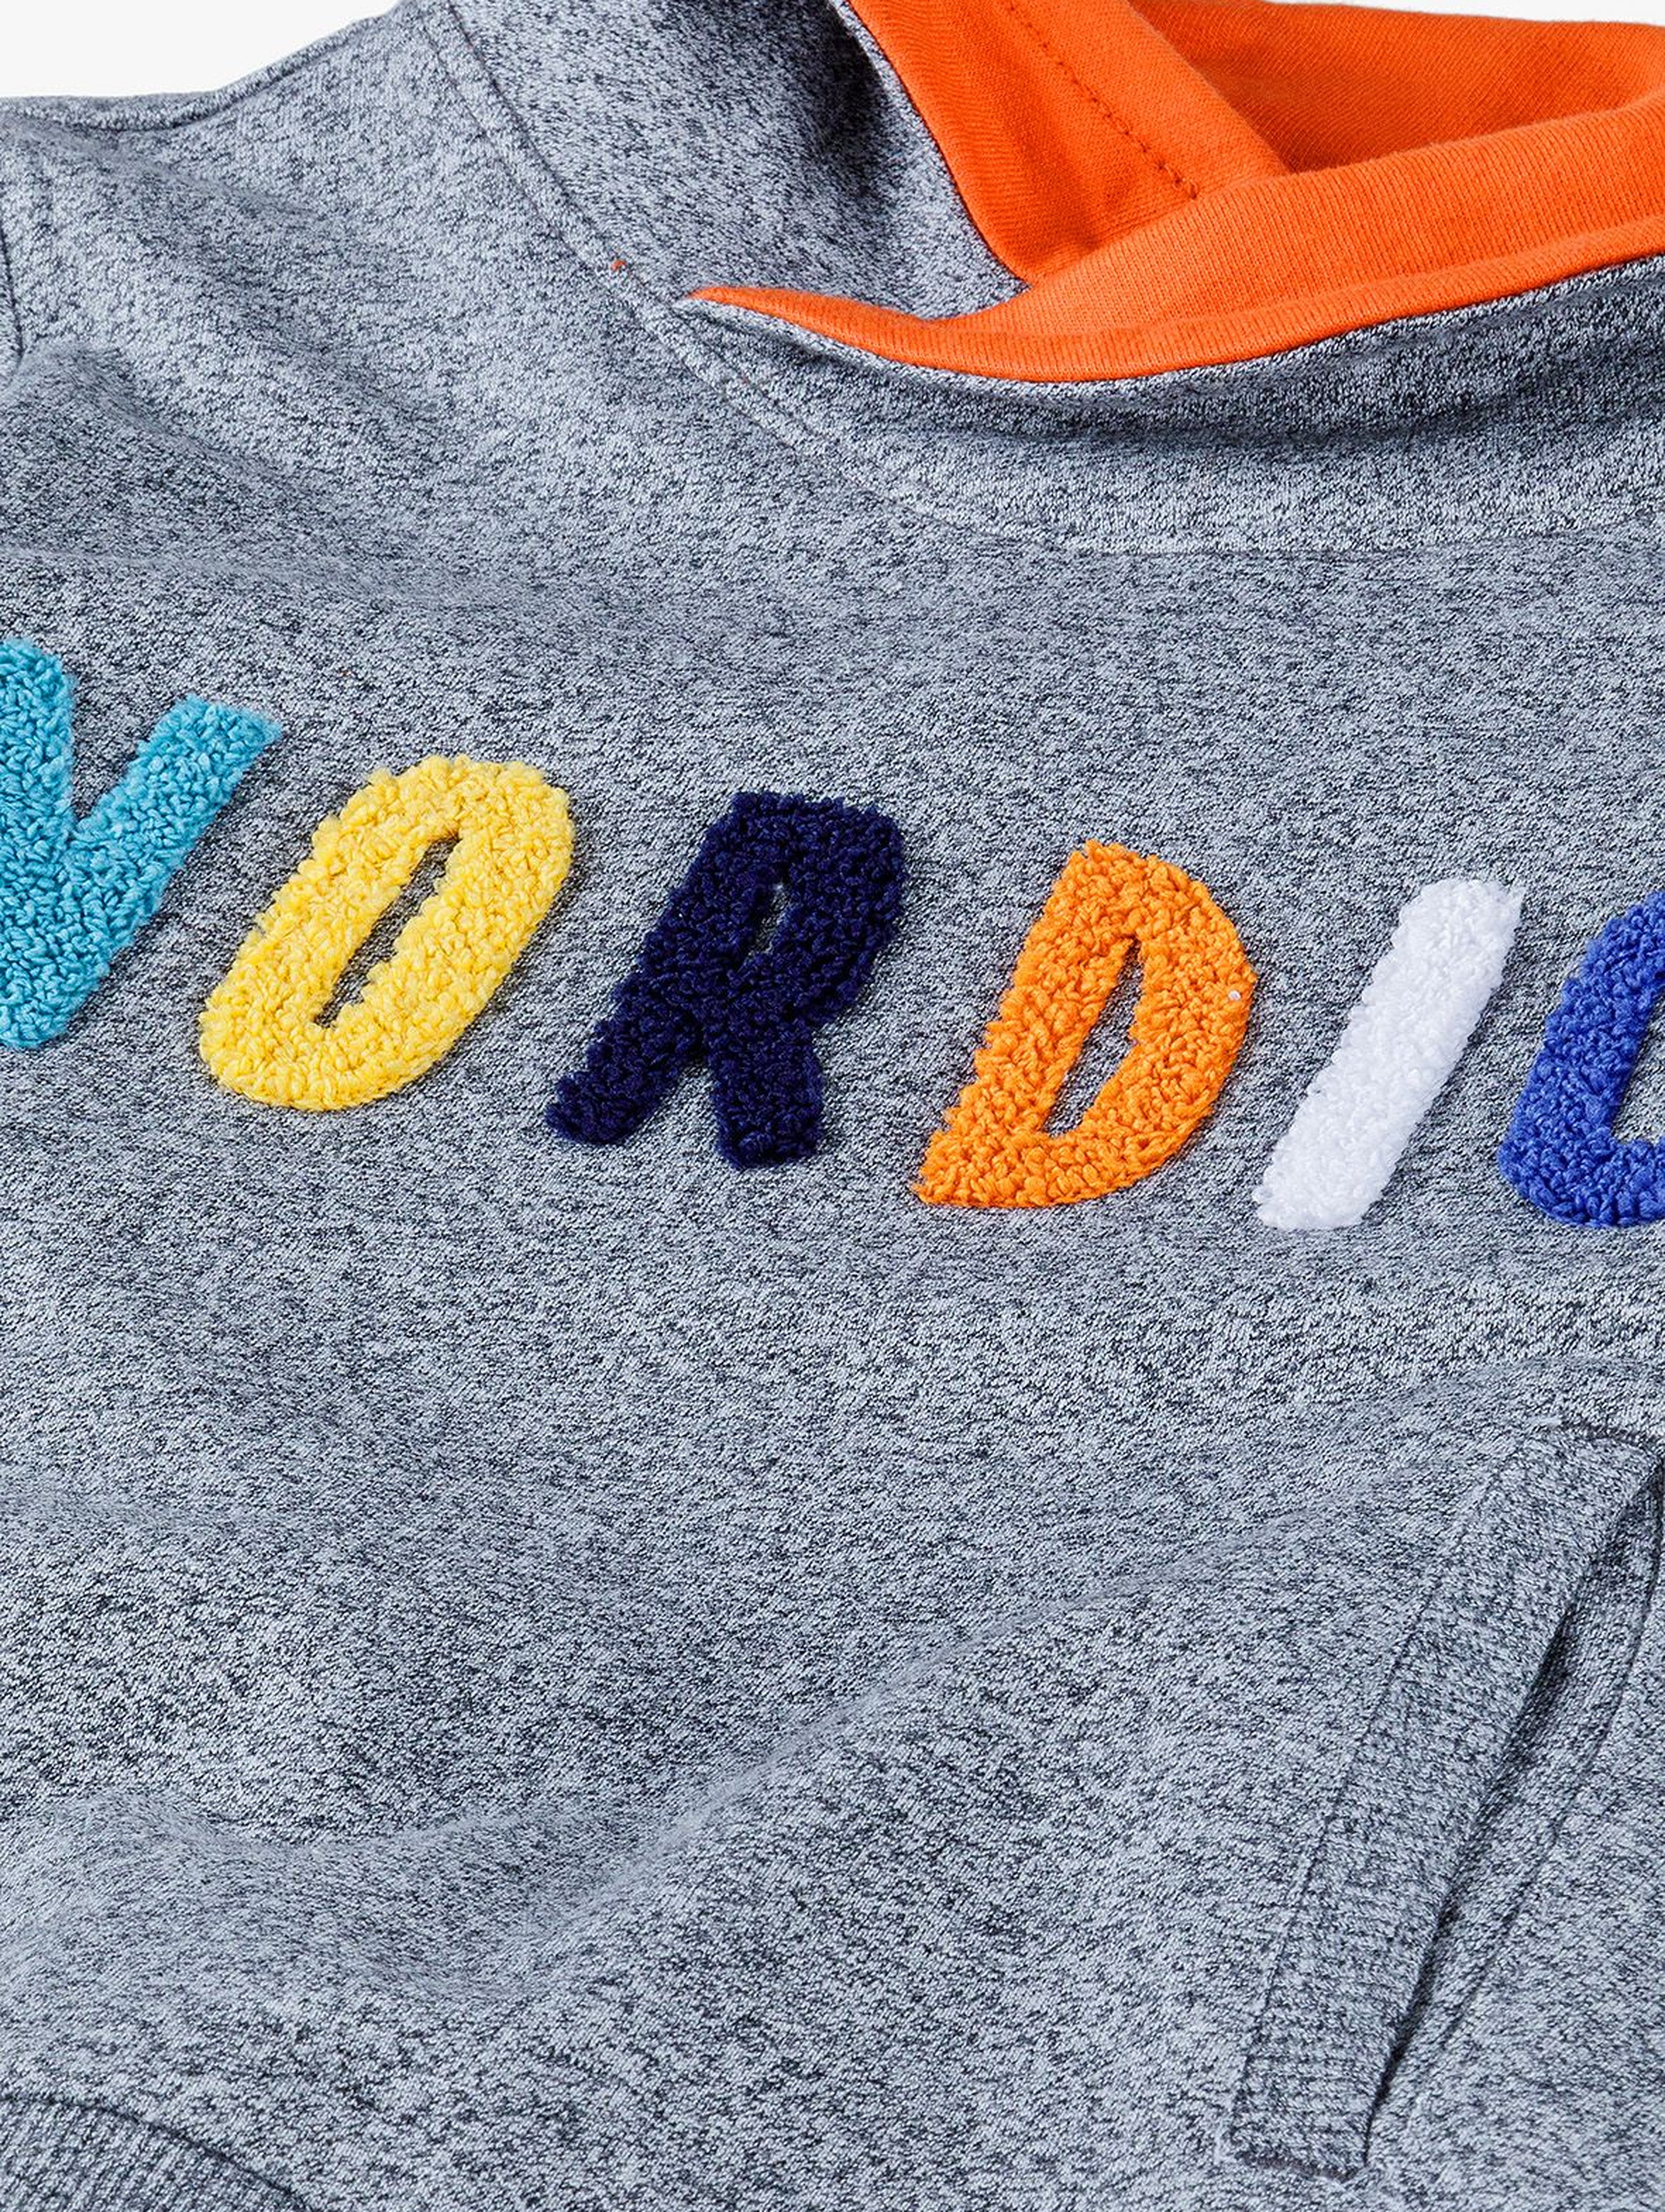 Bluza dresowa chłopięca z napisem- Nordic